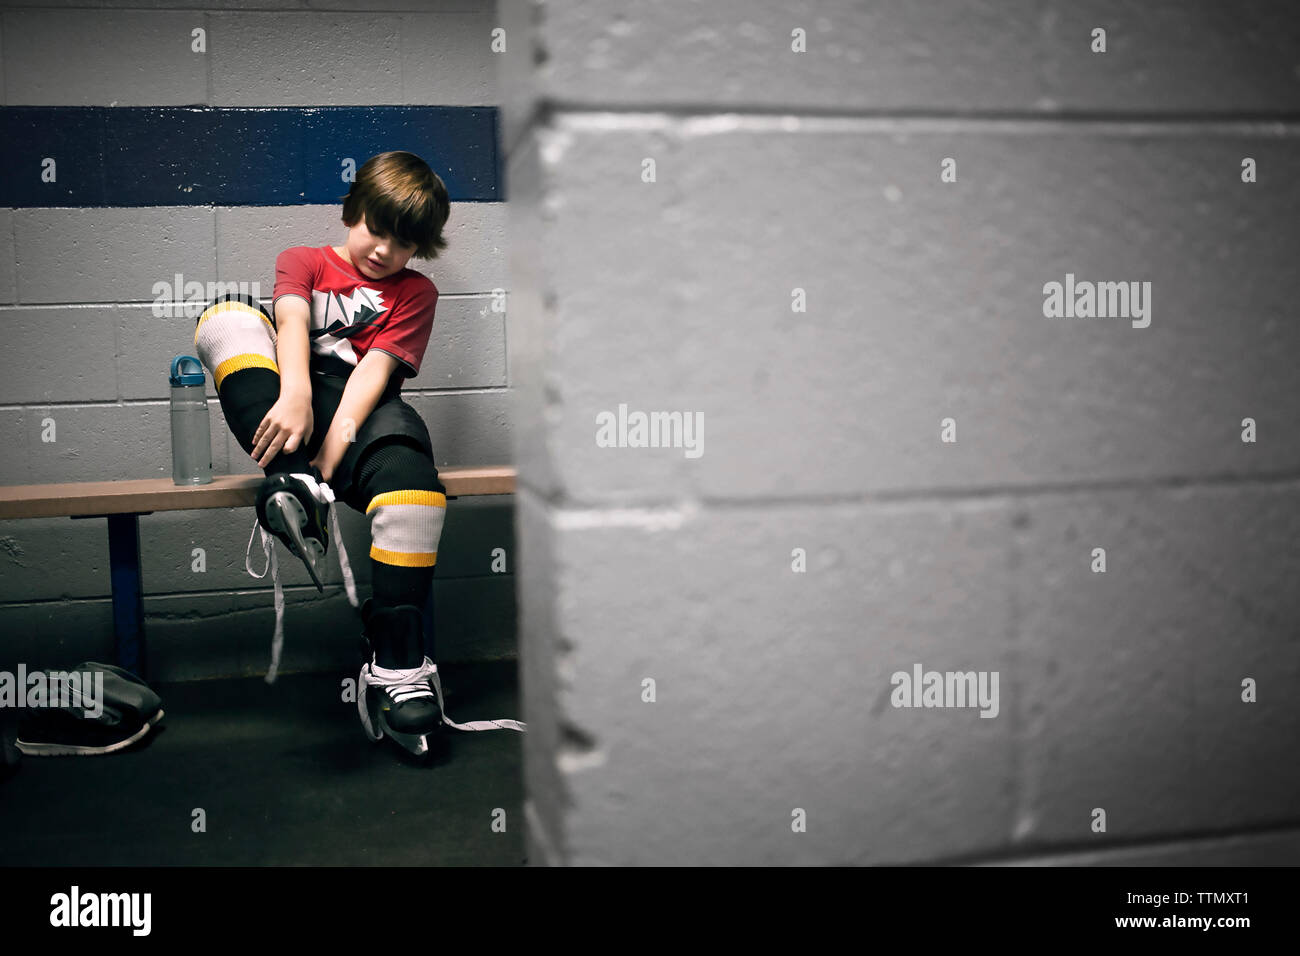 Junge setzen auf Eishockey Schlittschuhe Stockfoto